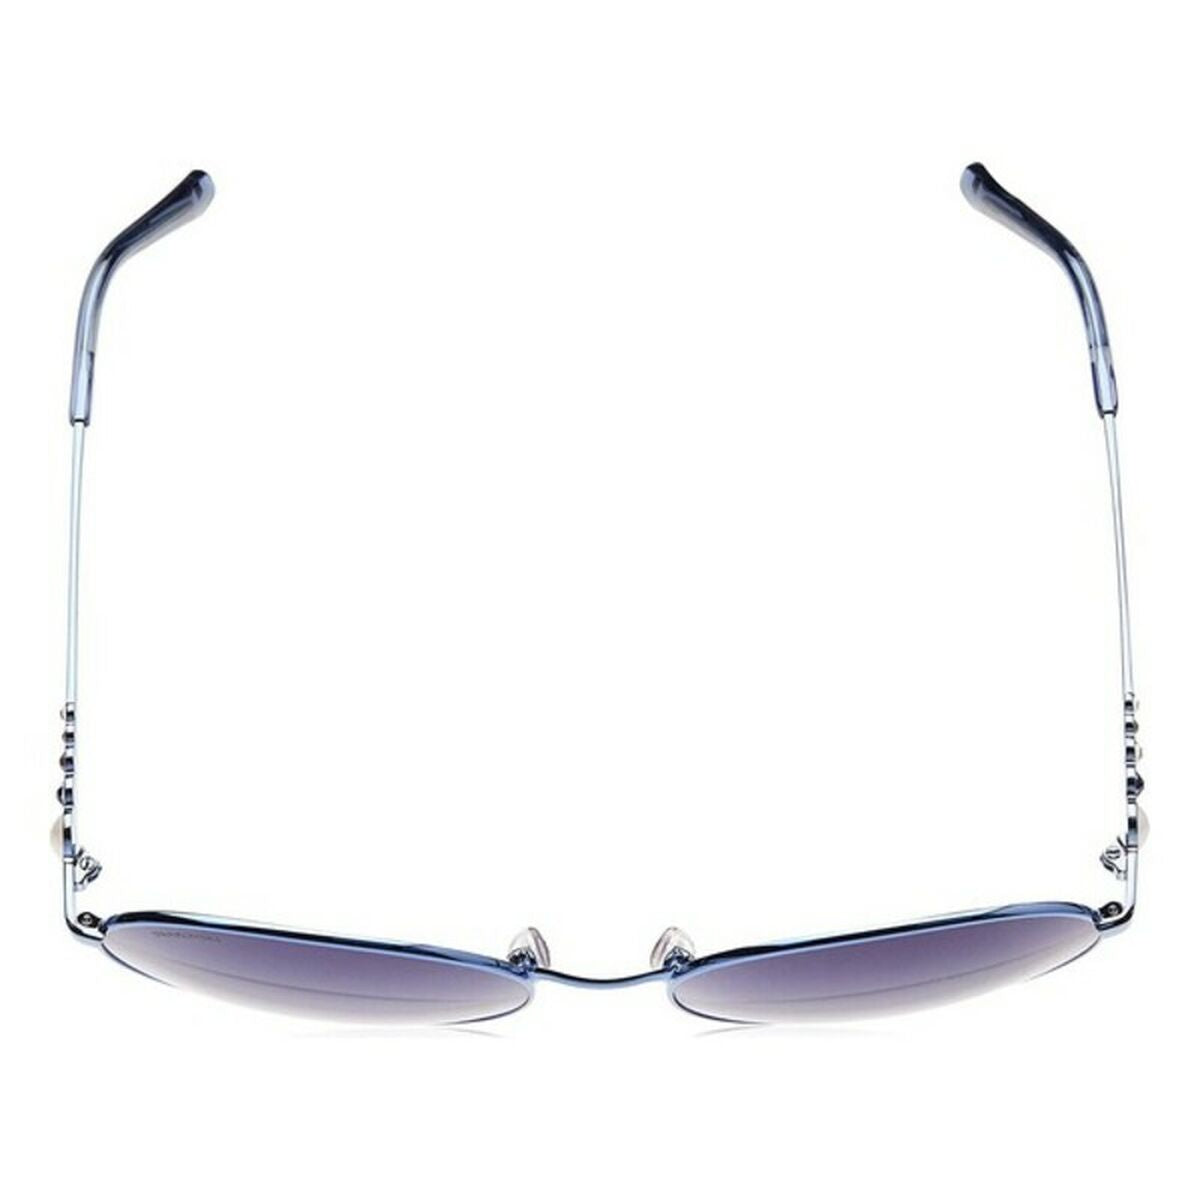 Kaufe Damensonnenbrille Swarovski SK018084Z61 Ø 61 mm bei AWK Flagship um € 71.00